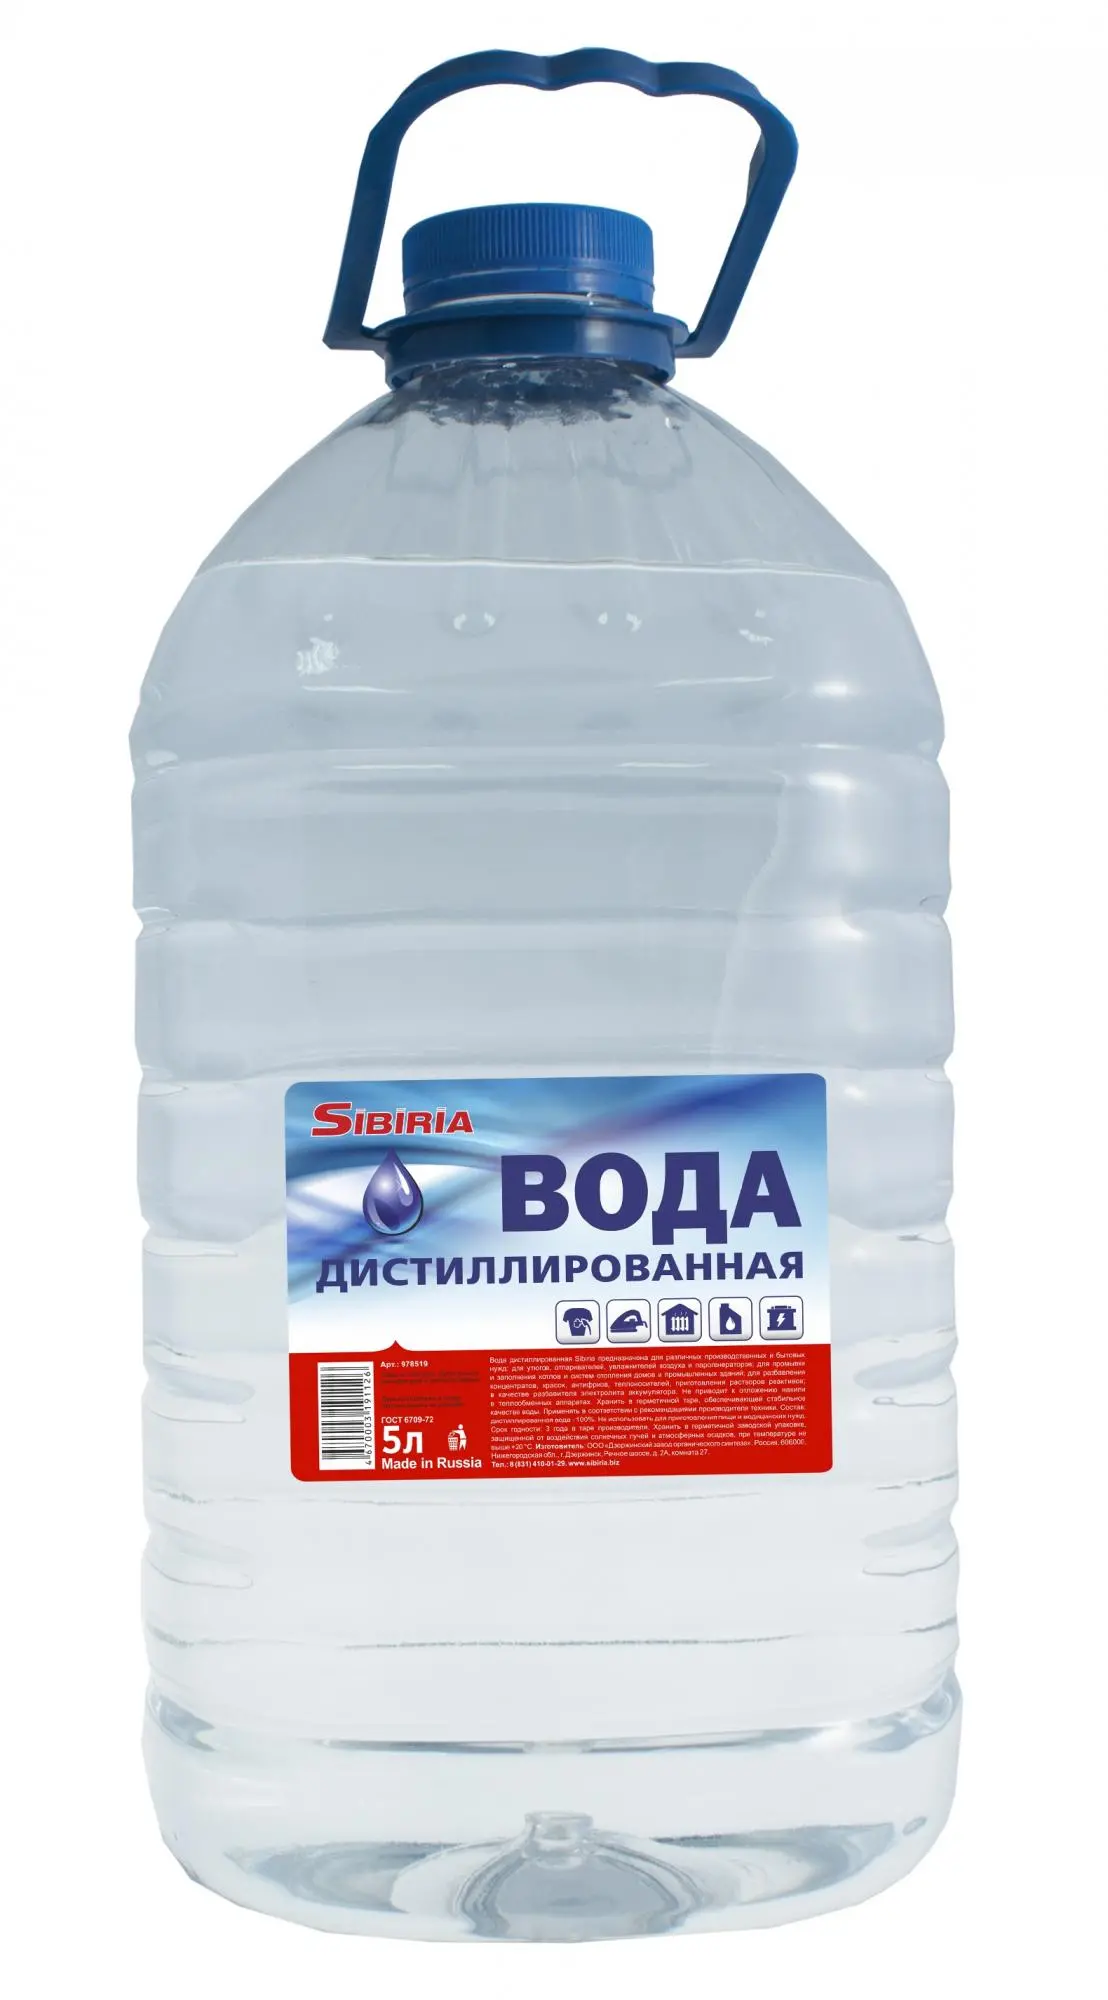 Дистиллированная вода Sibiria, 5 л.